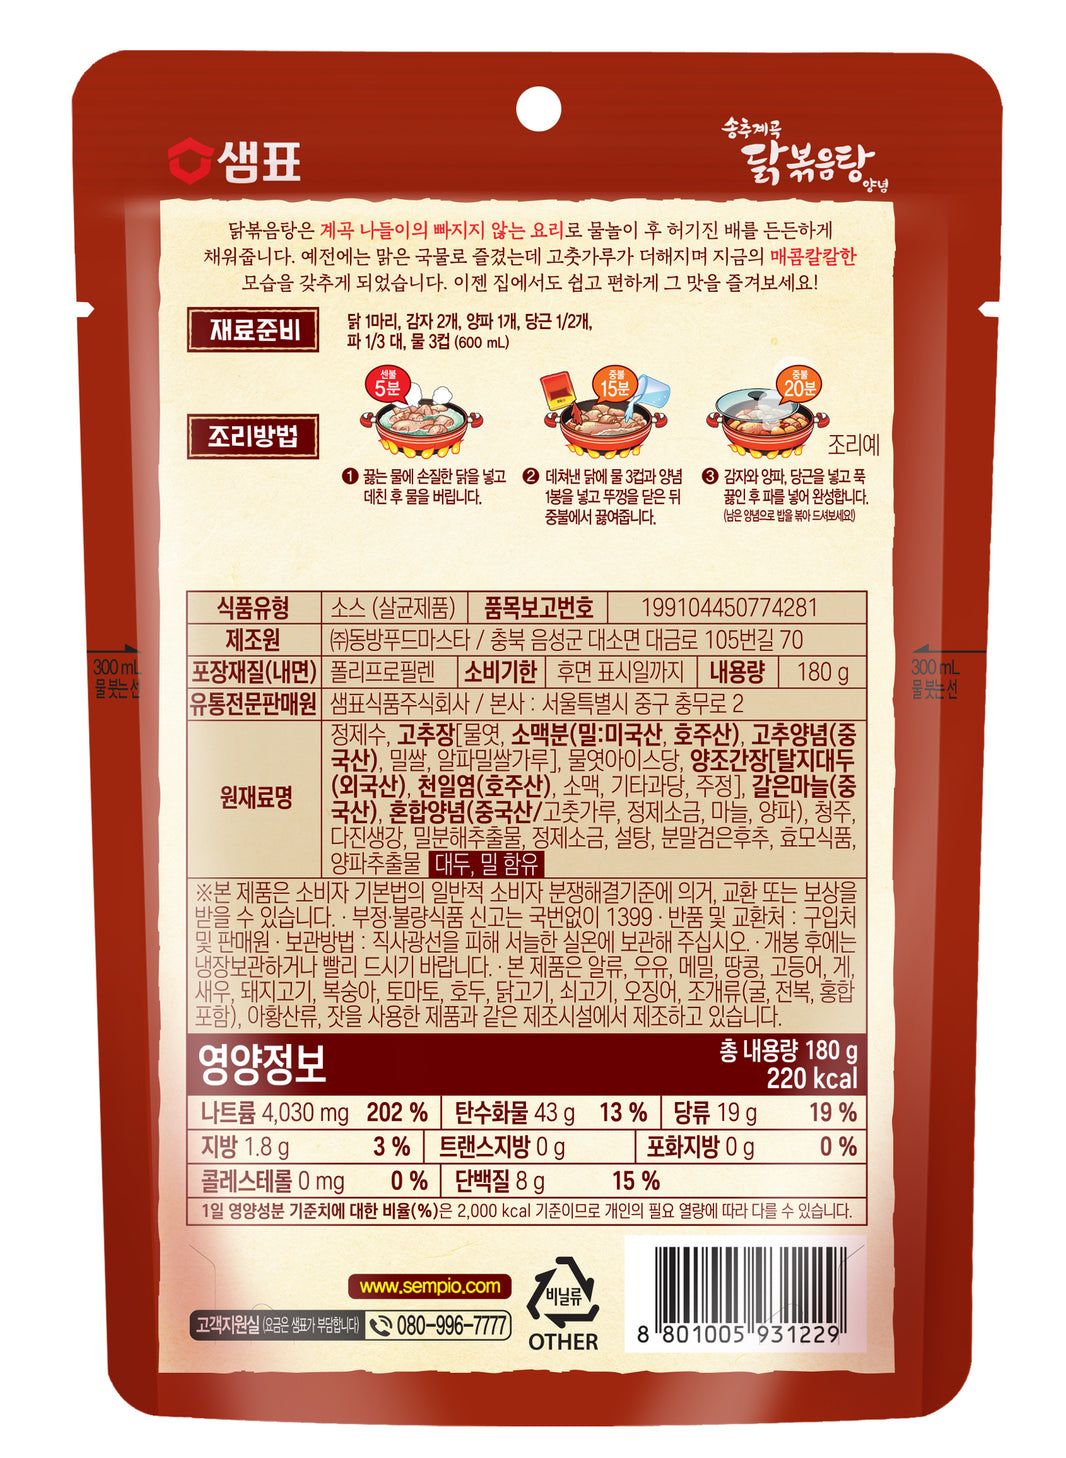 [Sempio] Spicy Chicken Stew Sauce / 샘표 송추계곡 닭볶음탕 양념 (180g)